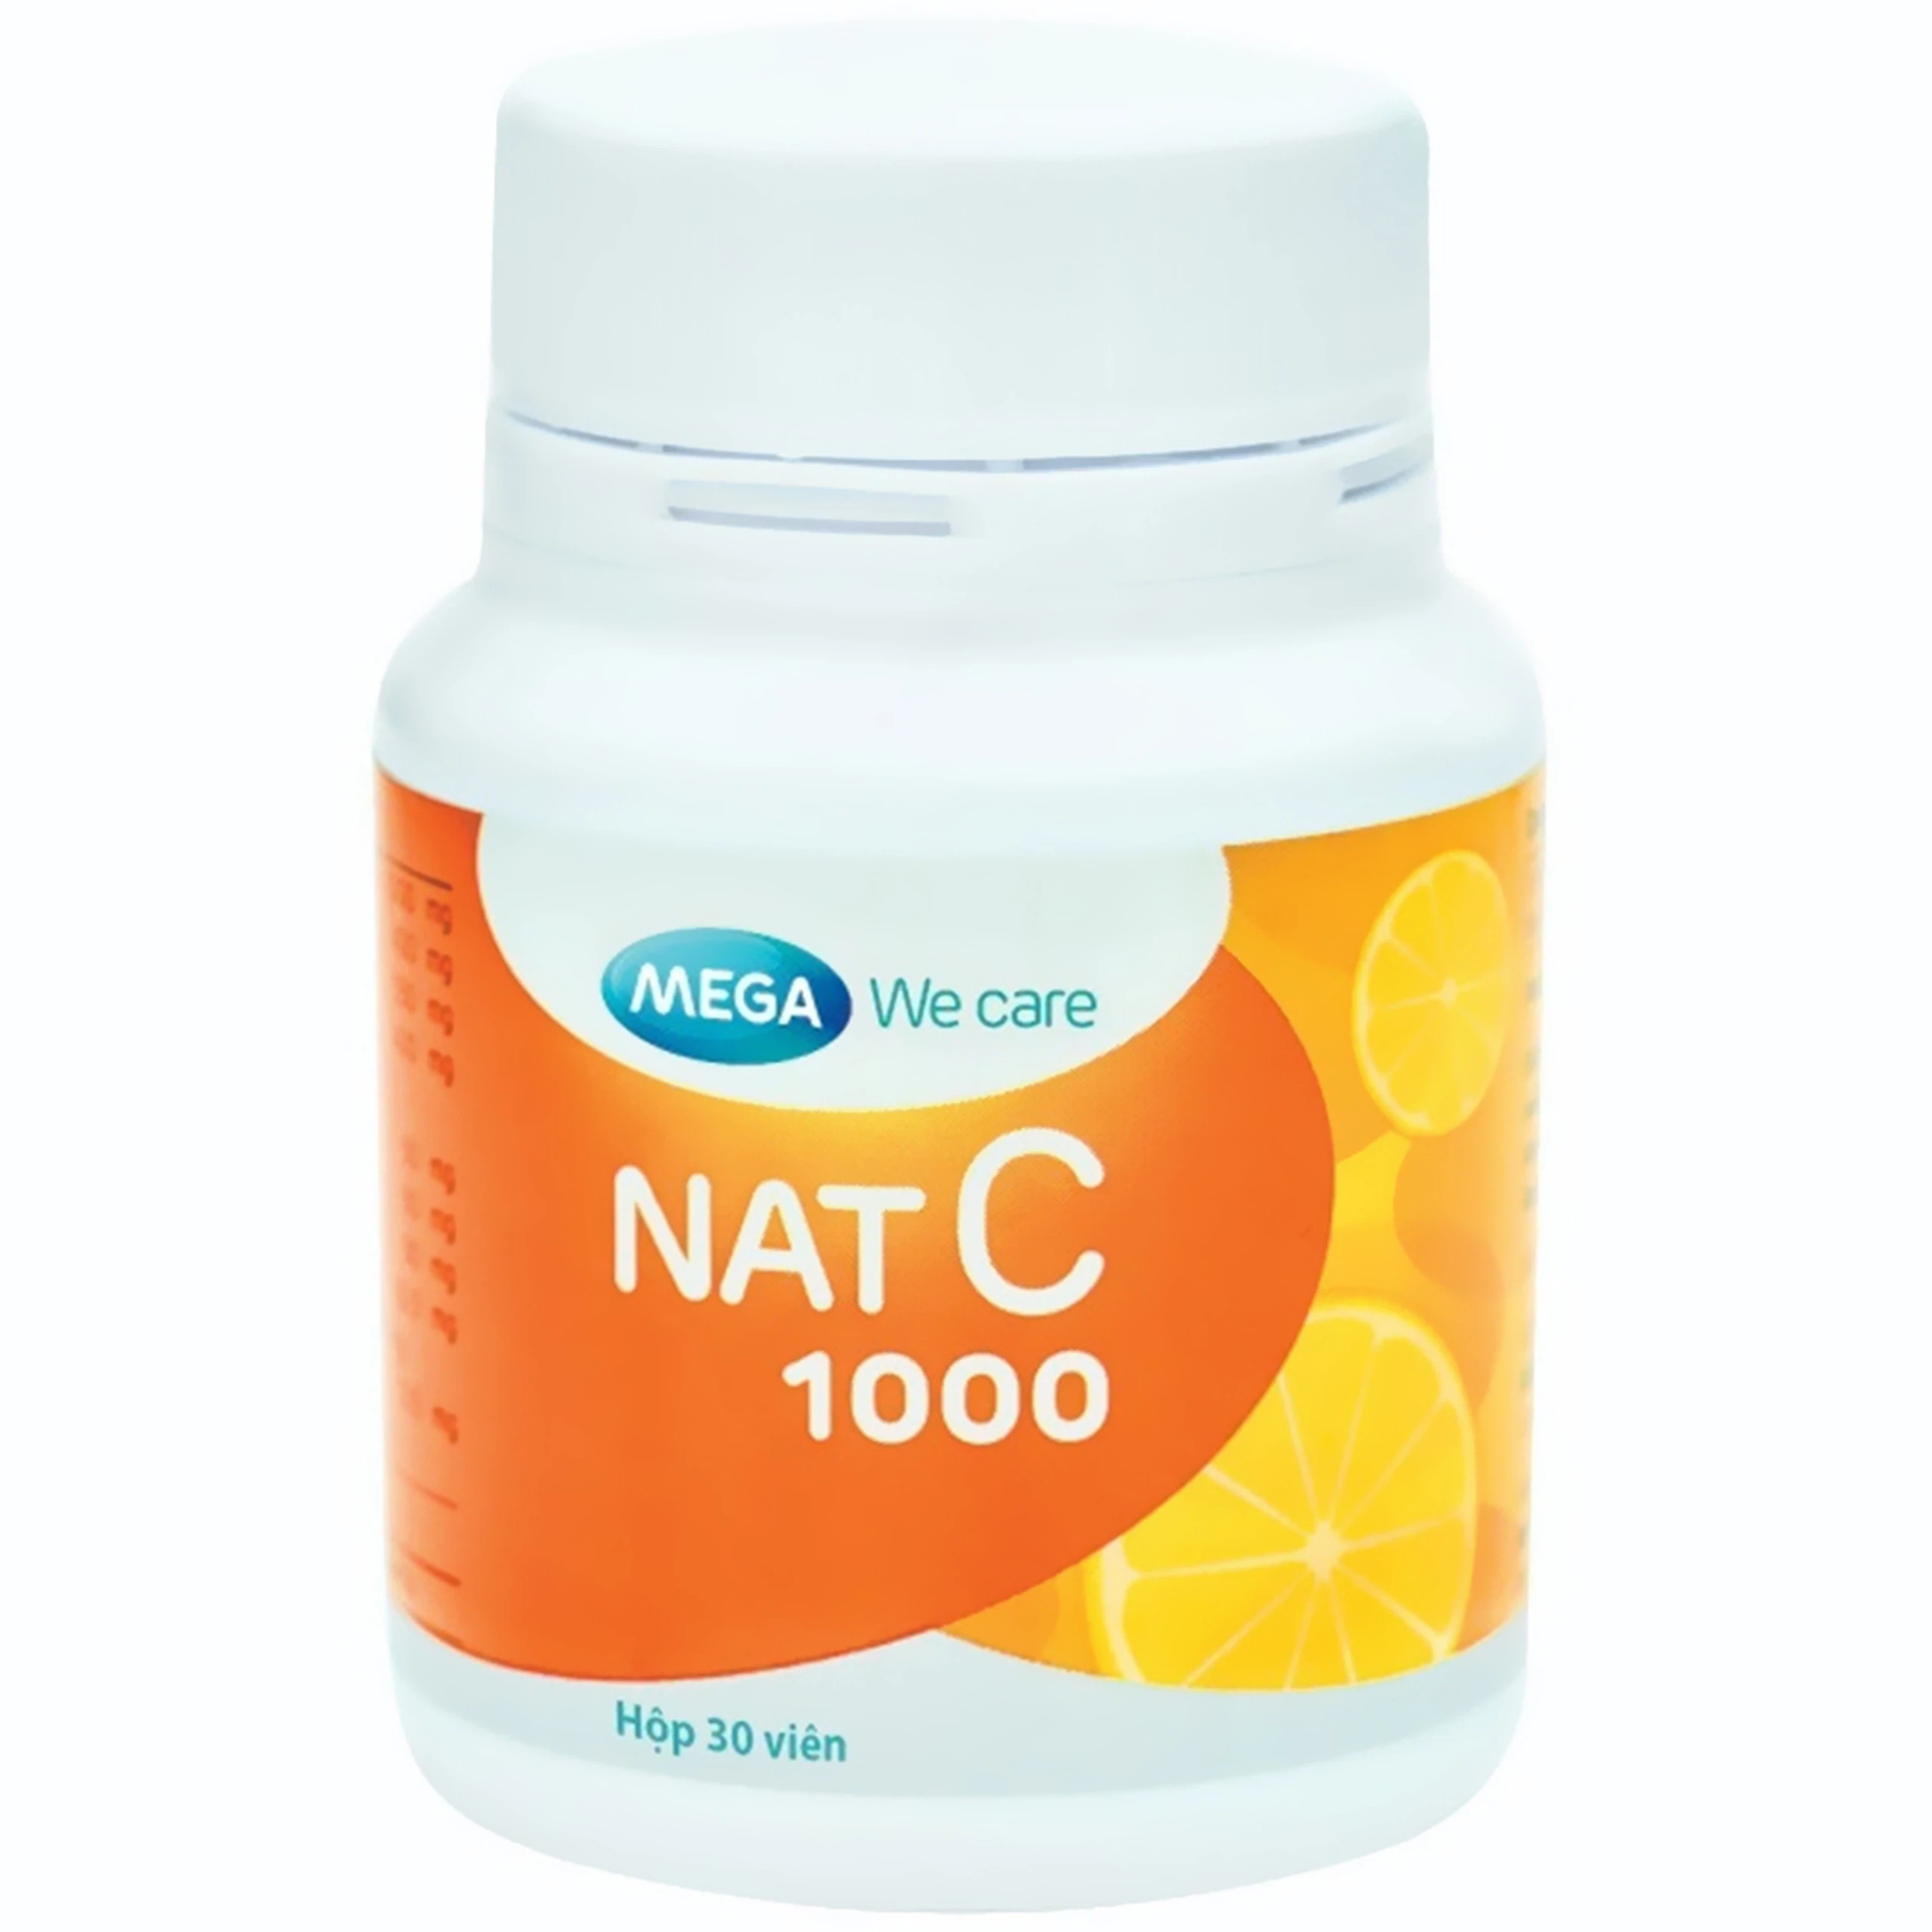 Viên uống Nat C 1000 cung cấp vitamin C cho cơ thể, tăng cường sức đề kháng (30 viên)